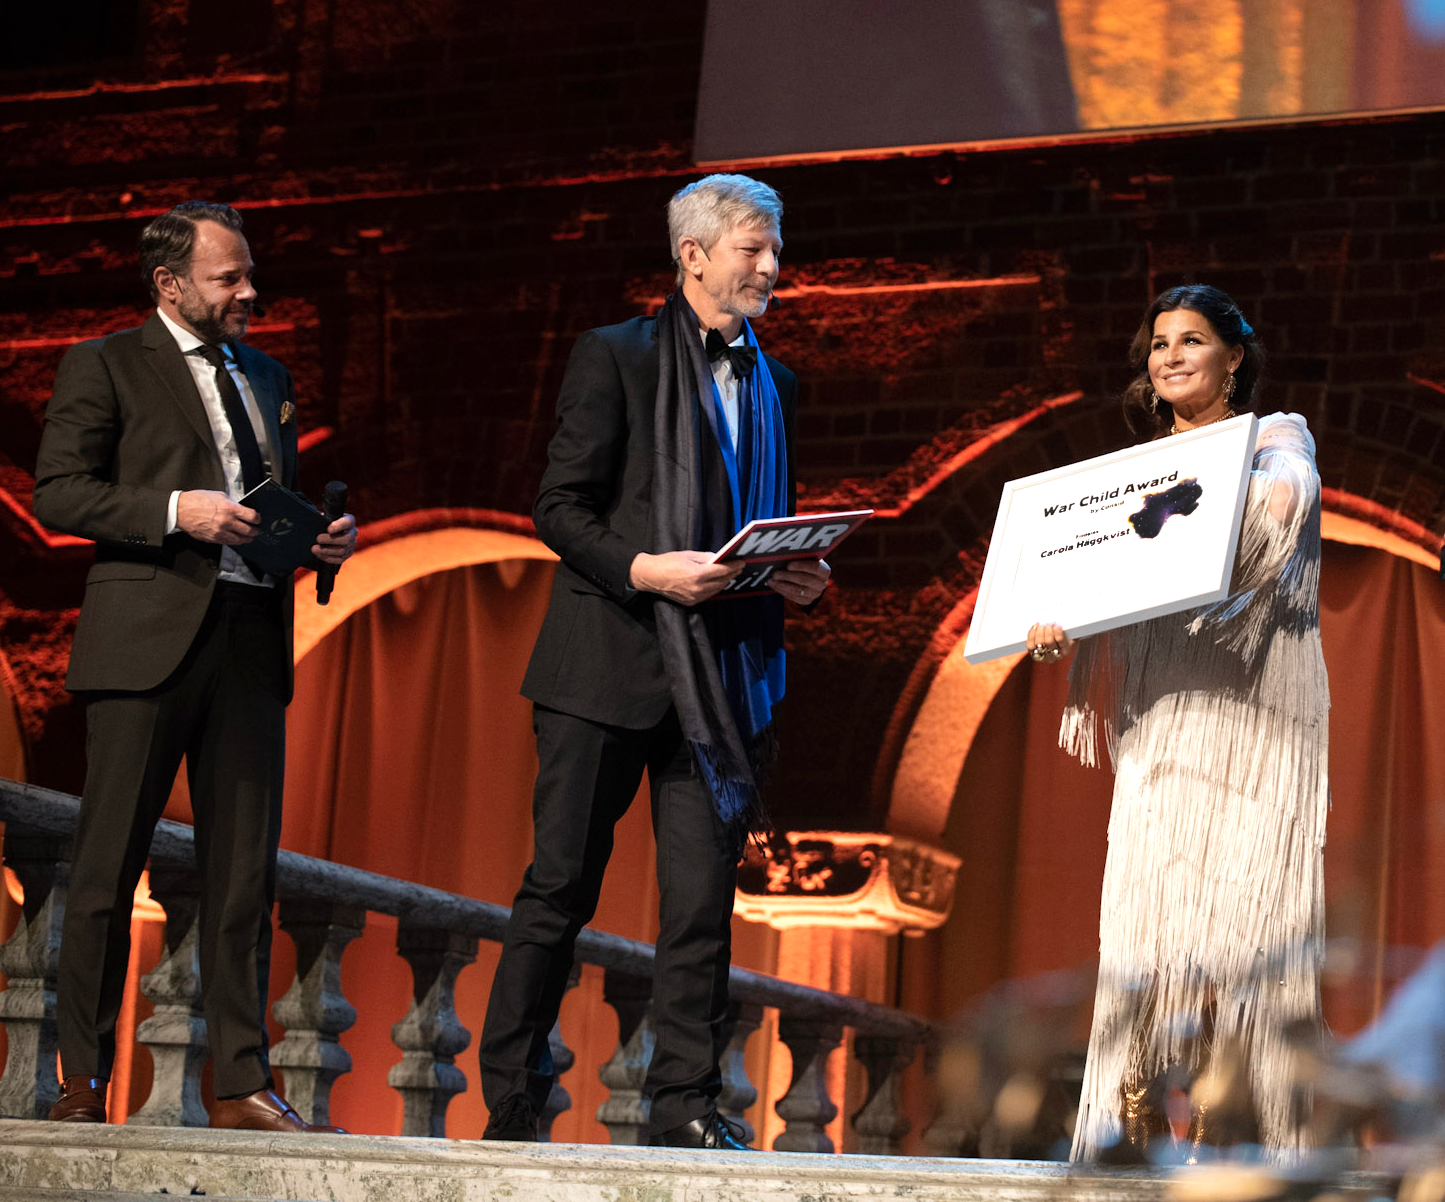 War Child Award by Consid tilldelas Carola Häggkvist. Fotograf: Mikael Axelsson.